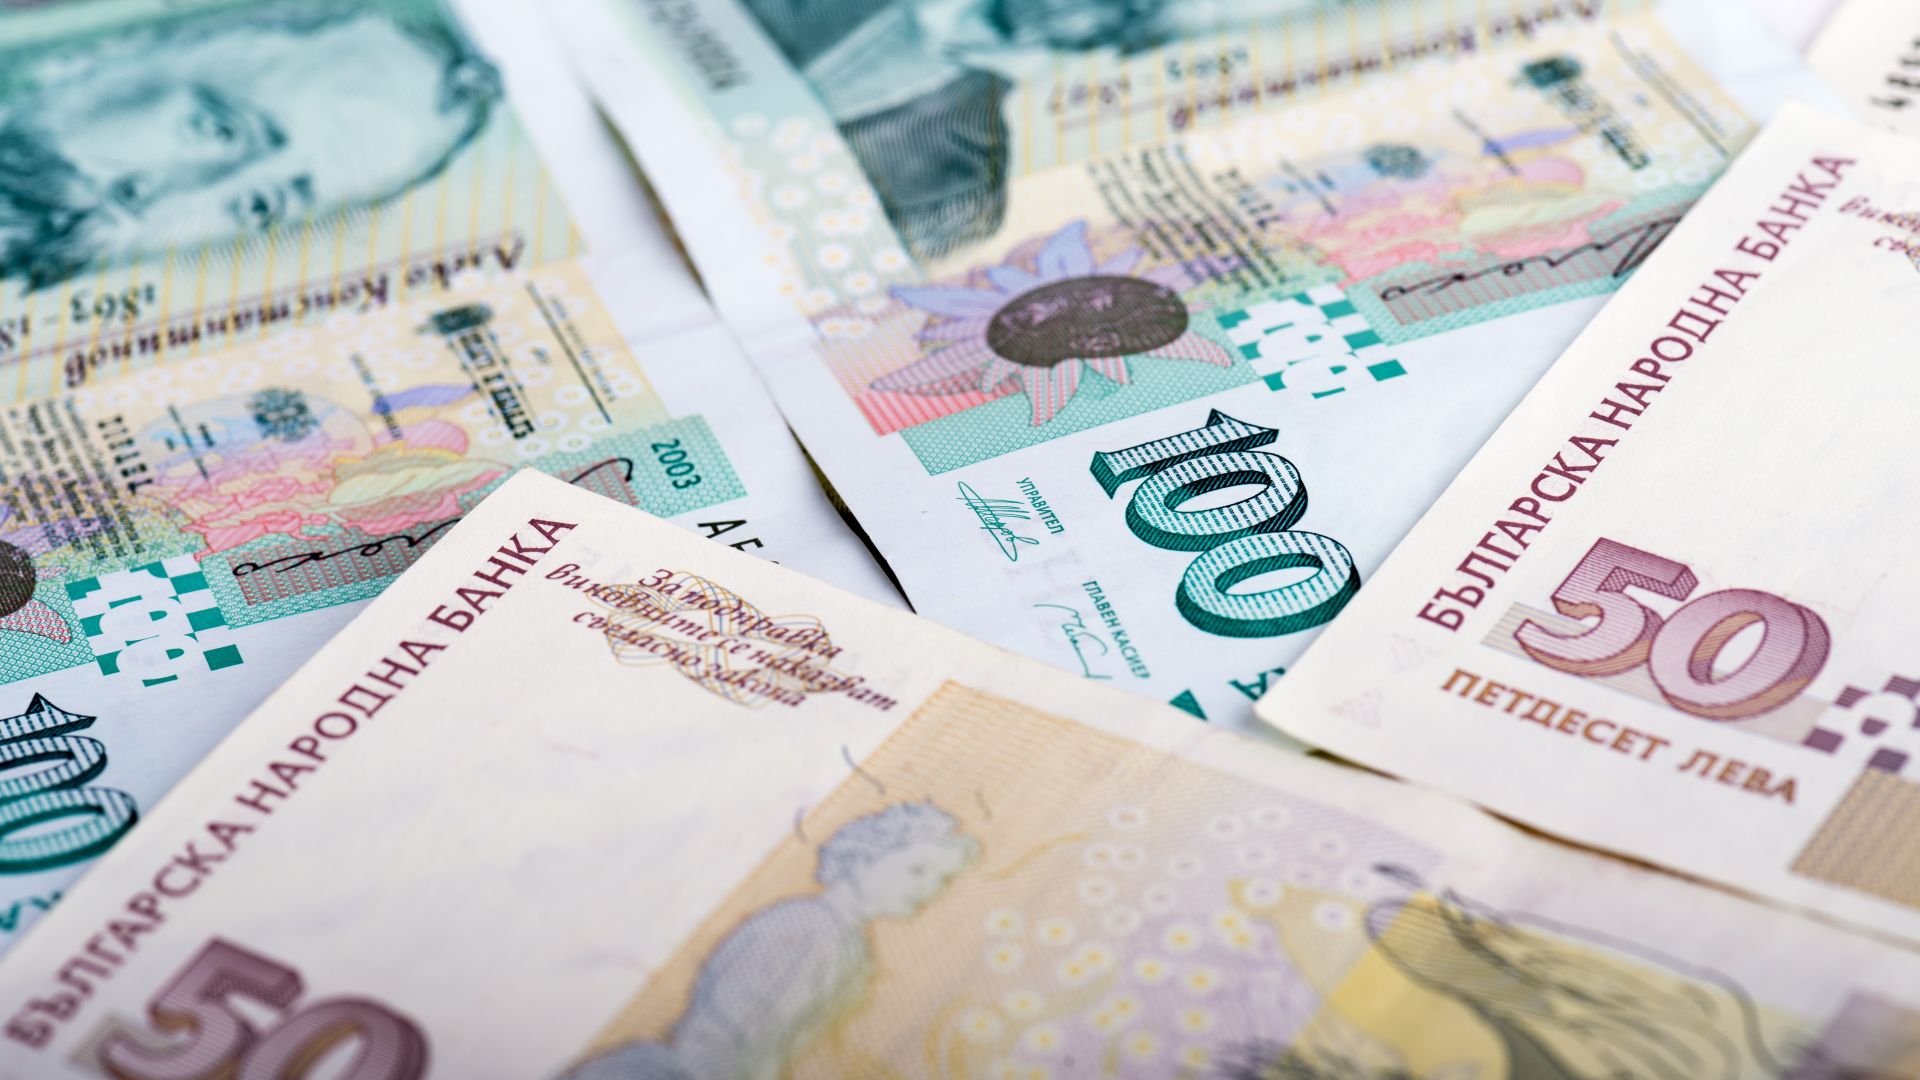 Търси се собственик на разпилени пари в София